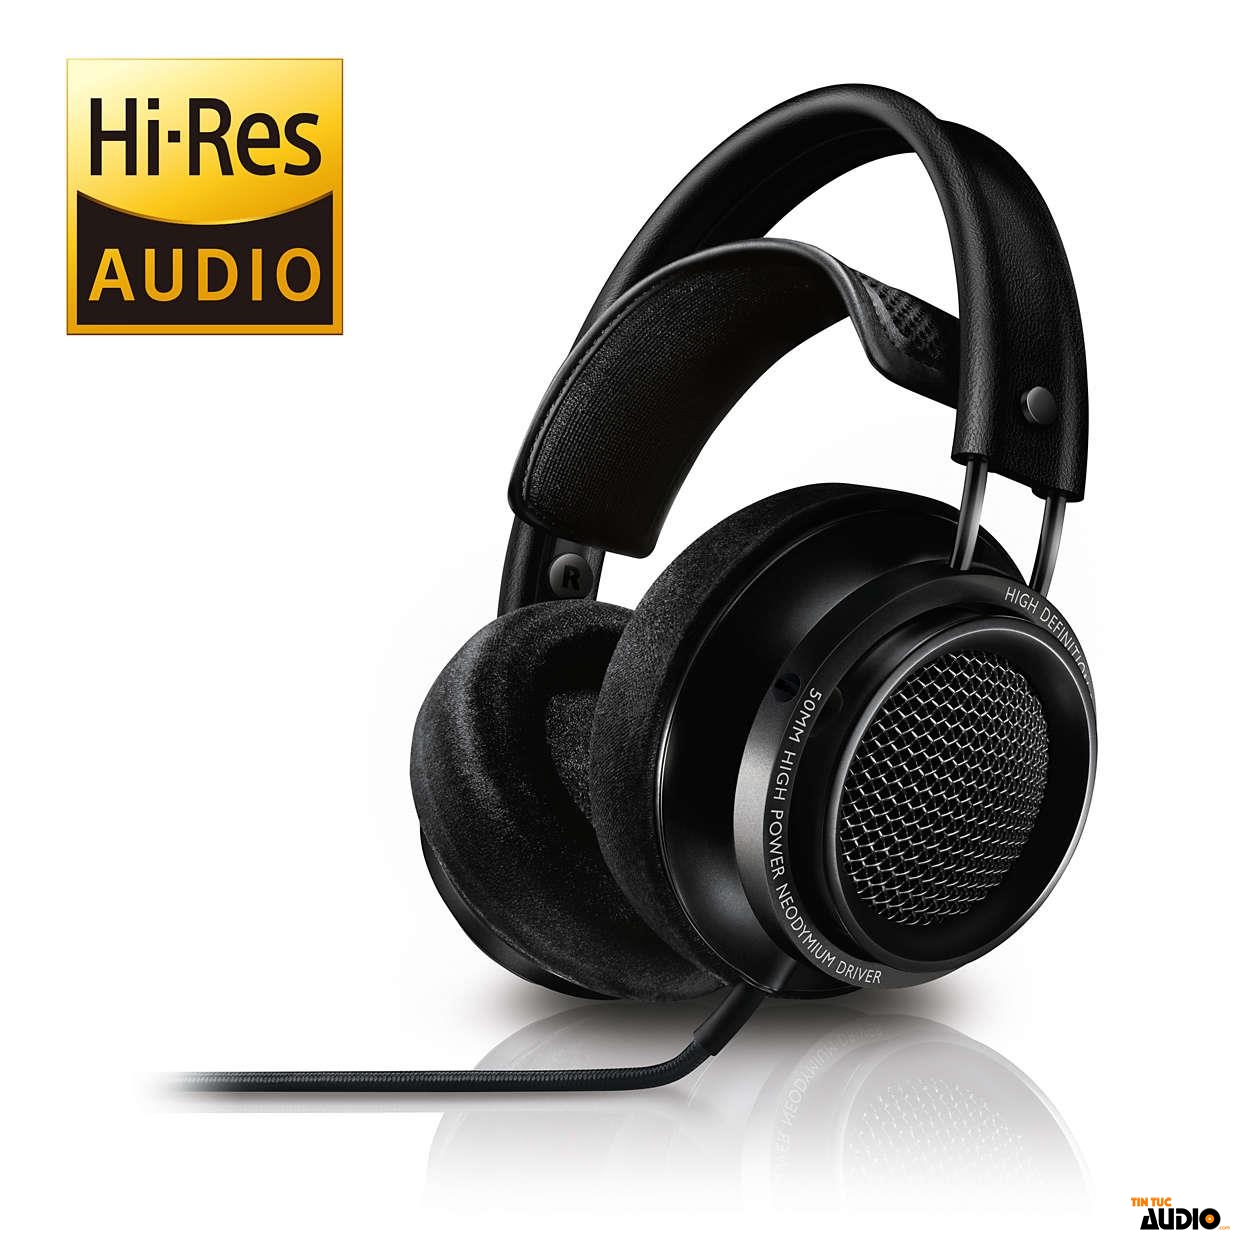 tim hieu Hi-res Audio | tintucaudio.com